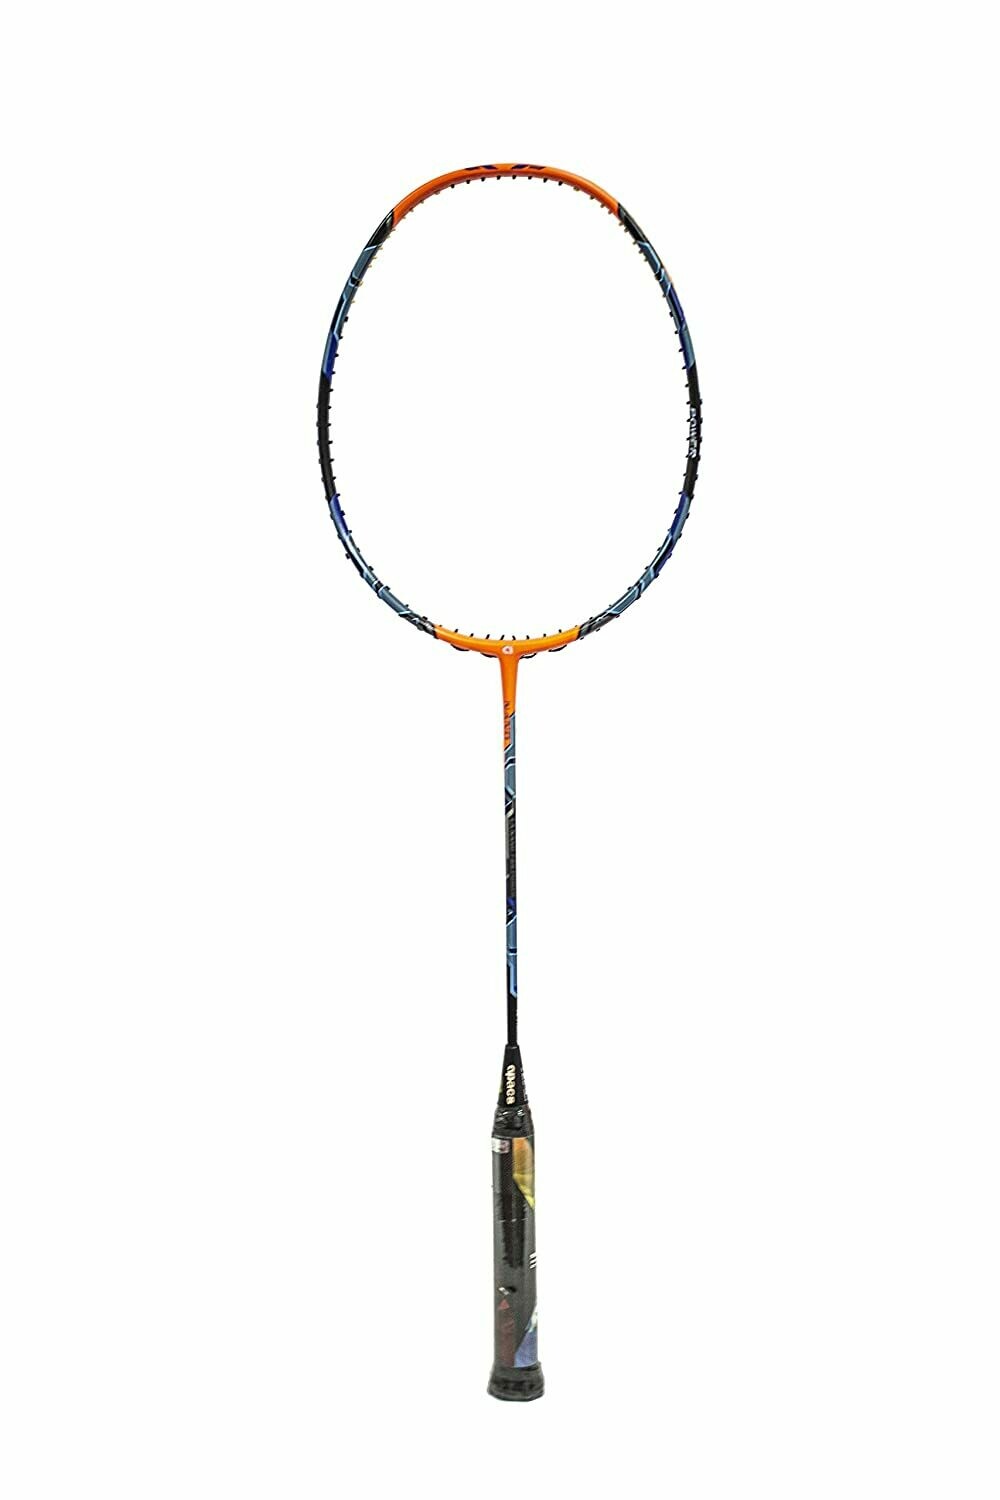 Apacs La Nano 729 Power Black/Orange Badminton Racquet